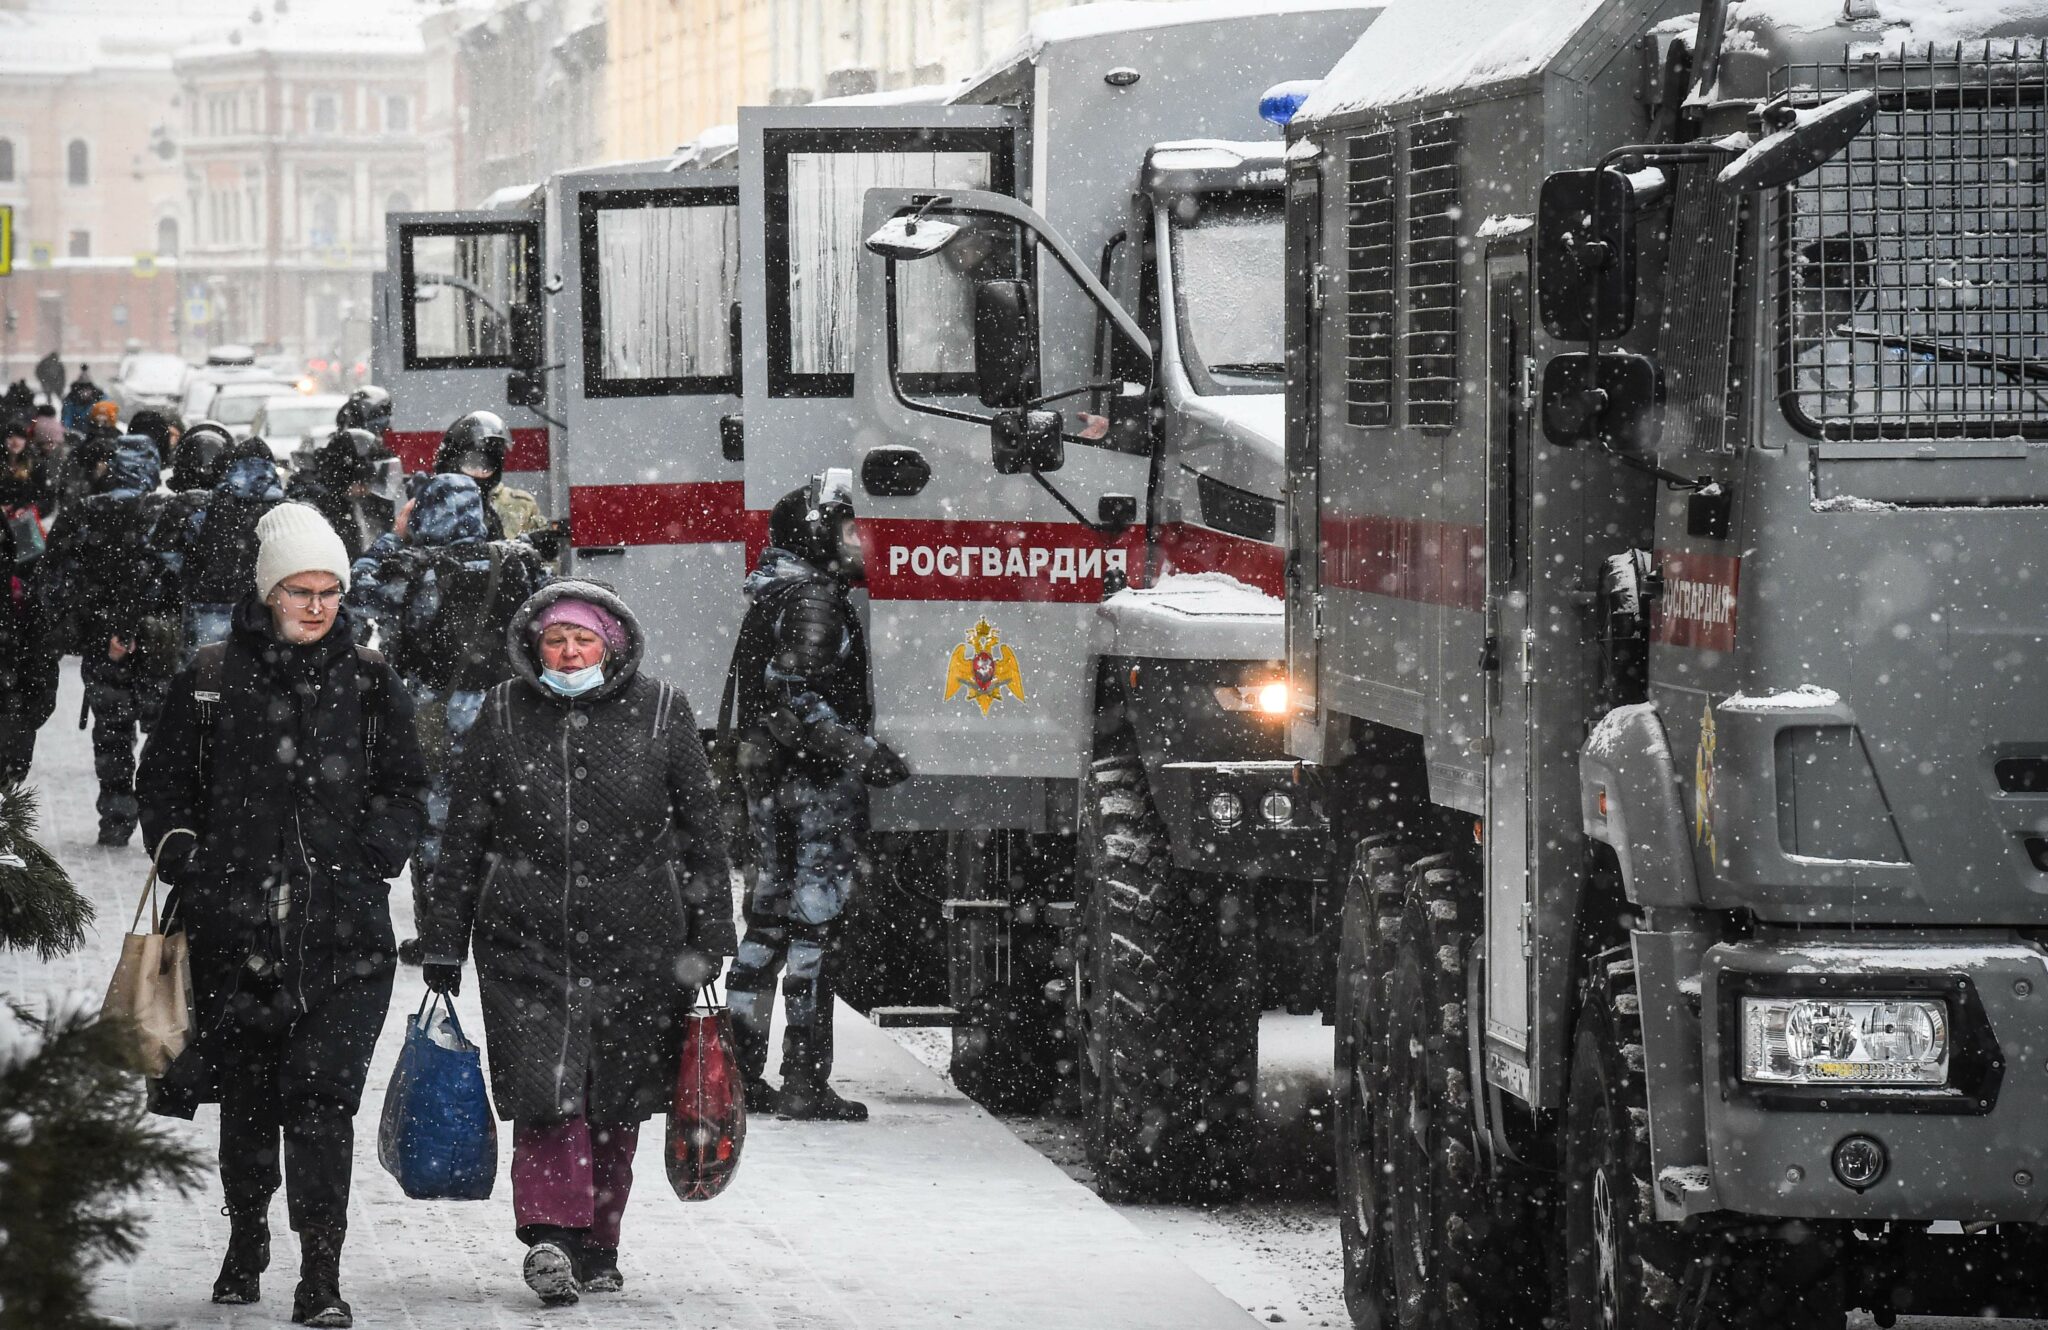 Автозаки в центре Санкт-Петербурга 6 февраля. Фото Olga MALTSEVA / AFP/Scanpix/Leta